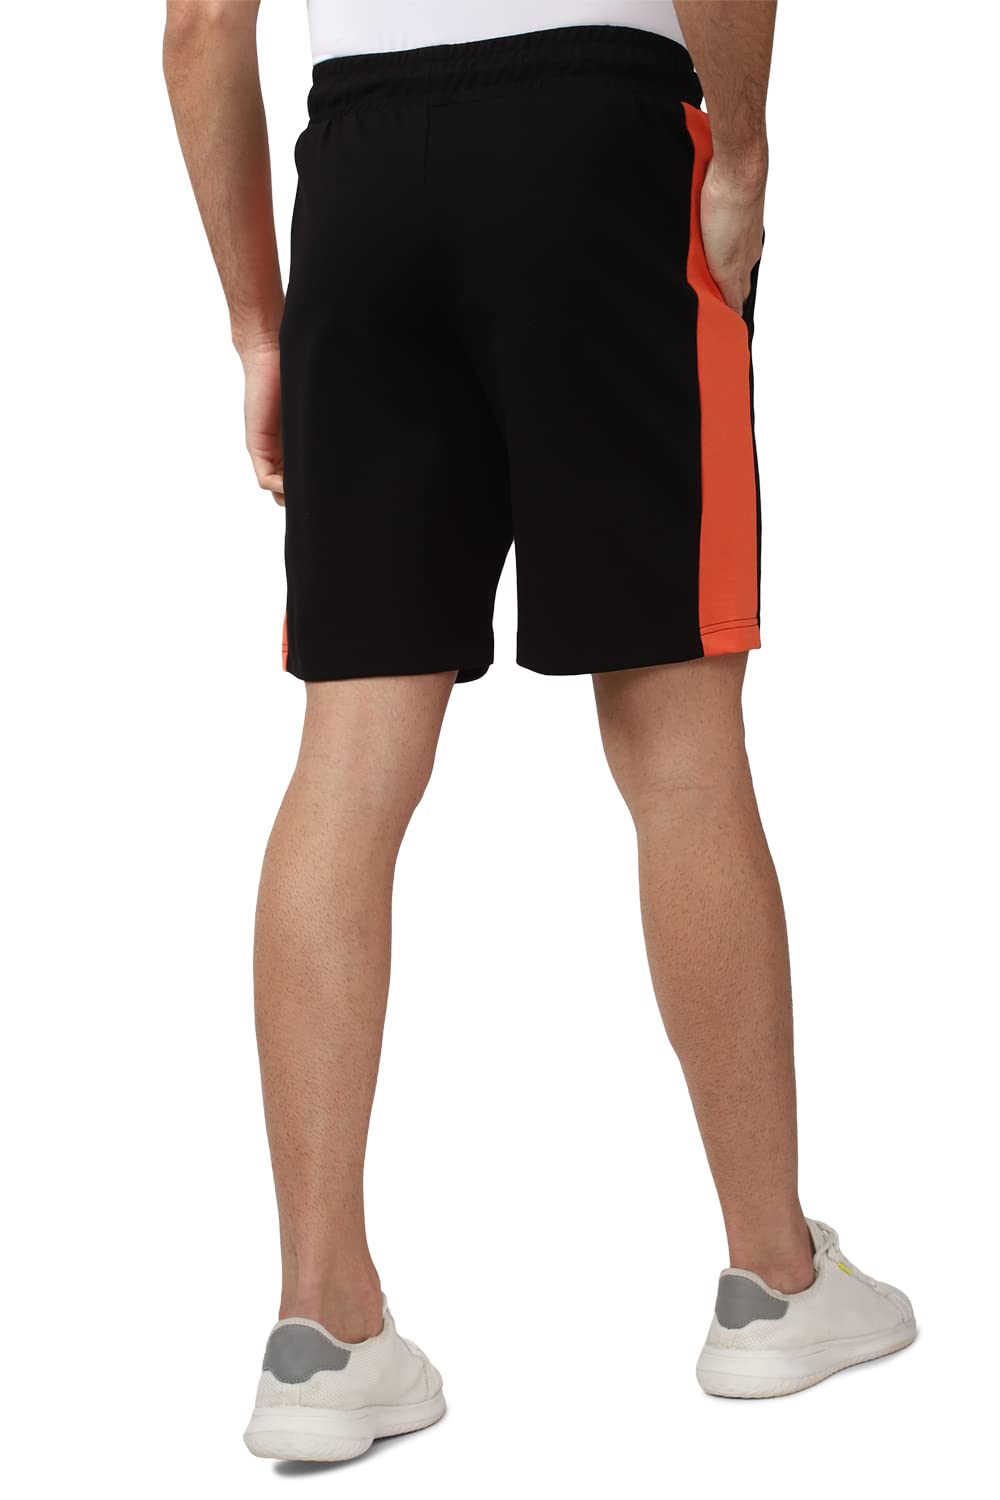 Van Heusen Men's Bermuda Shorts (VFLOAATFD79450_Black